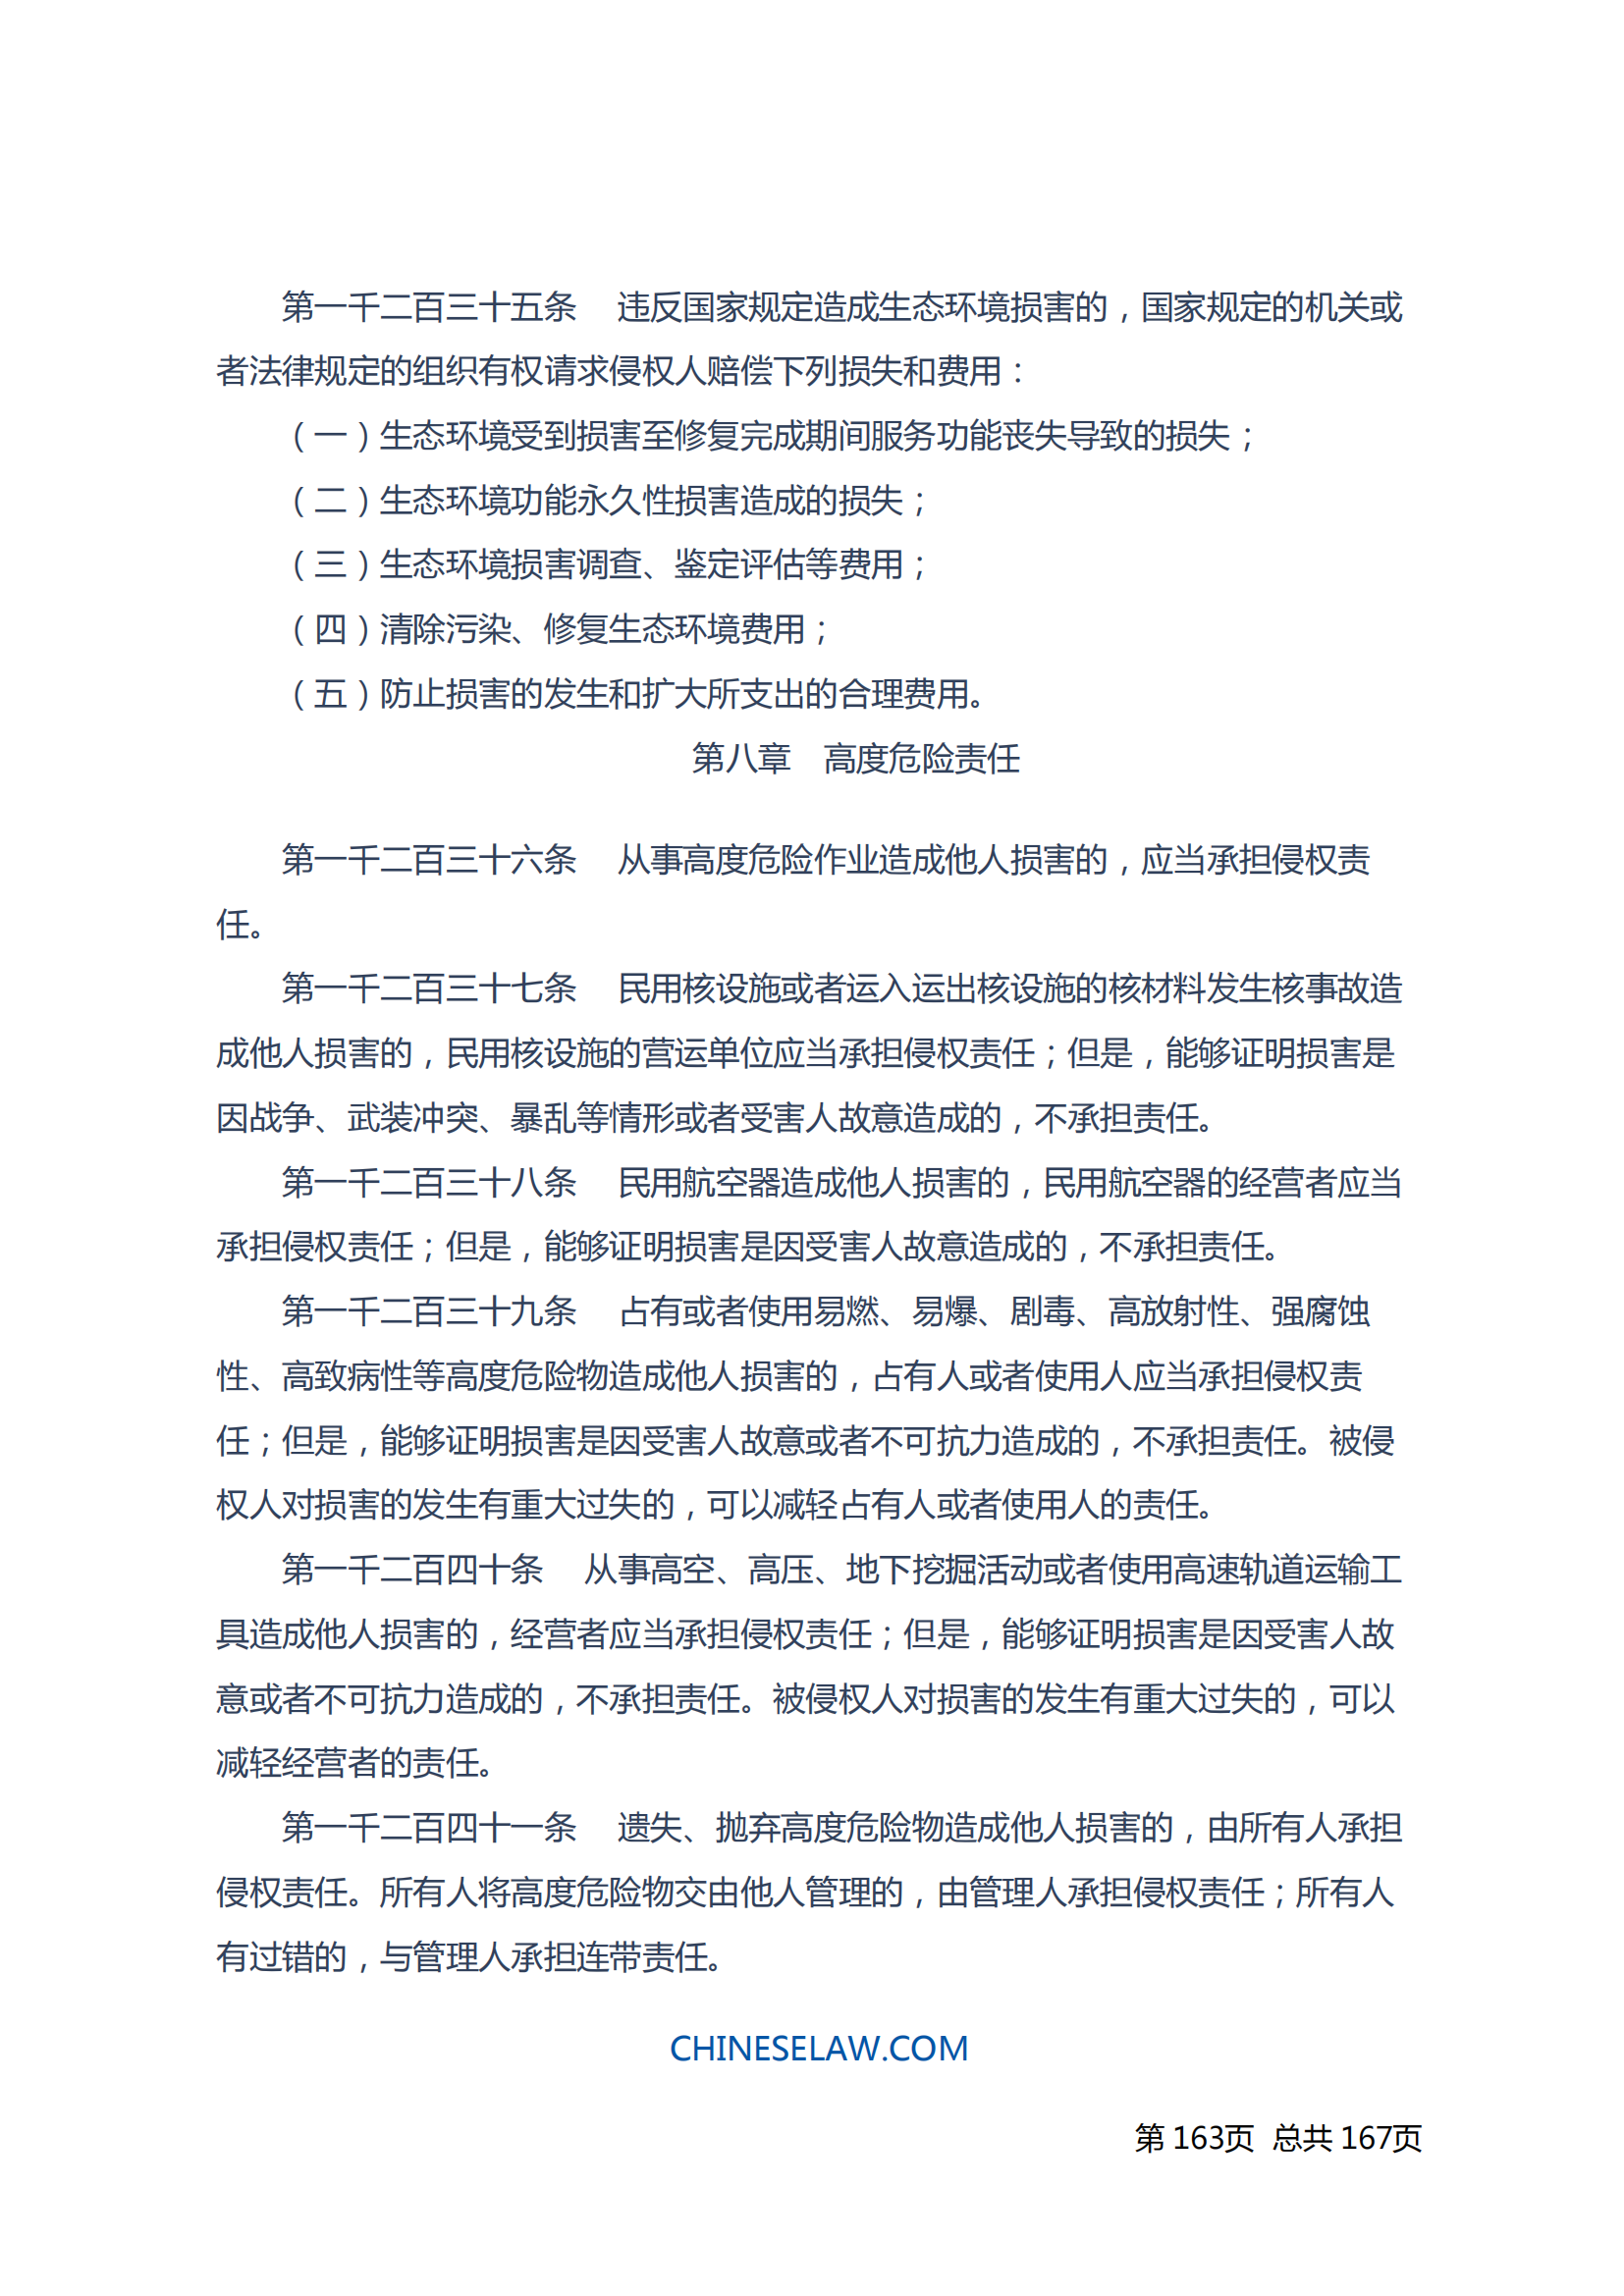 中华人民共和国民法典_162